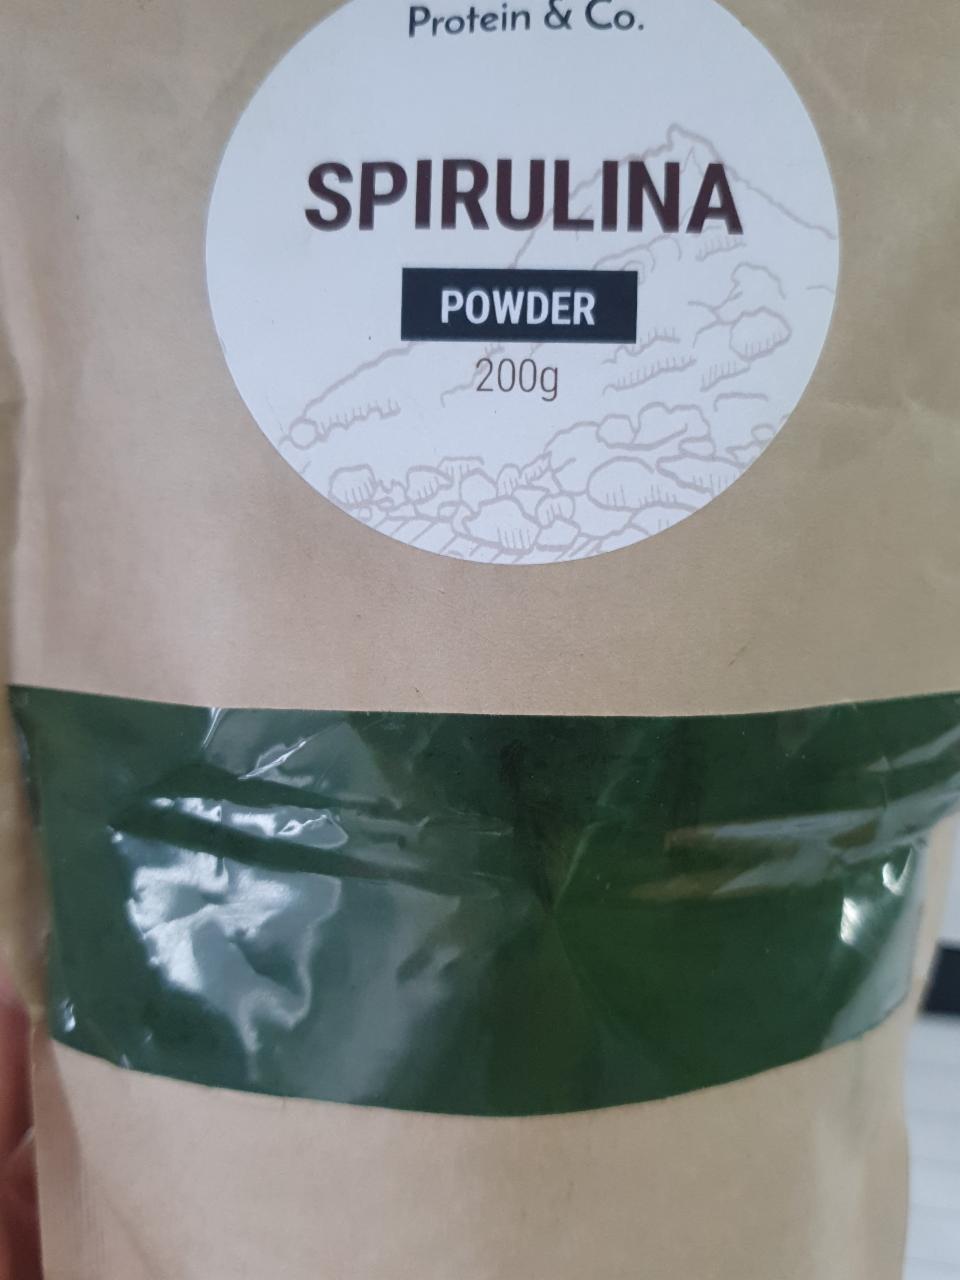 Fotografie - Spirulina powder Protein & Co.